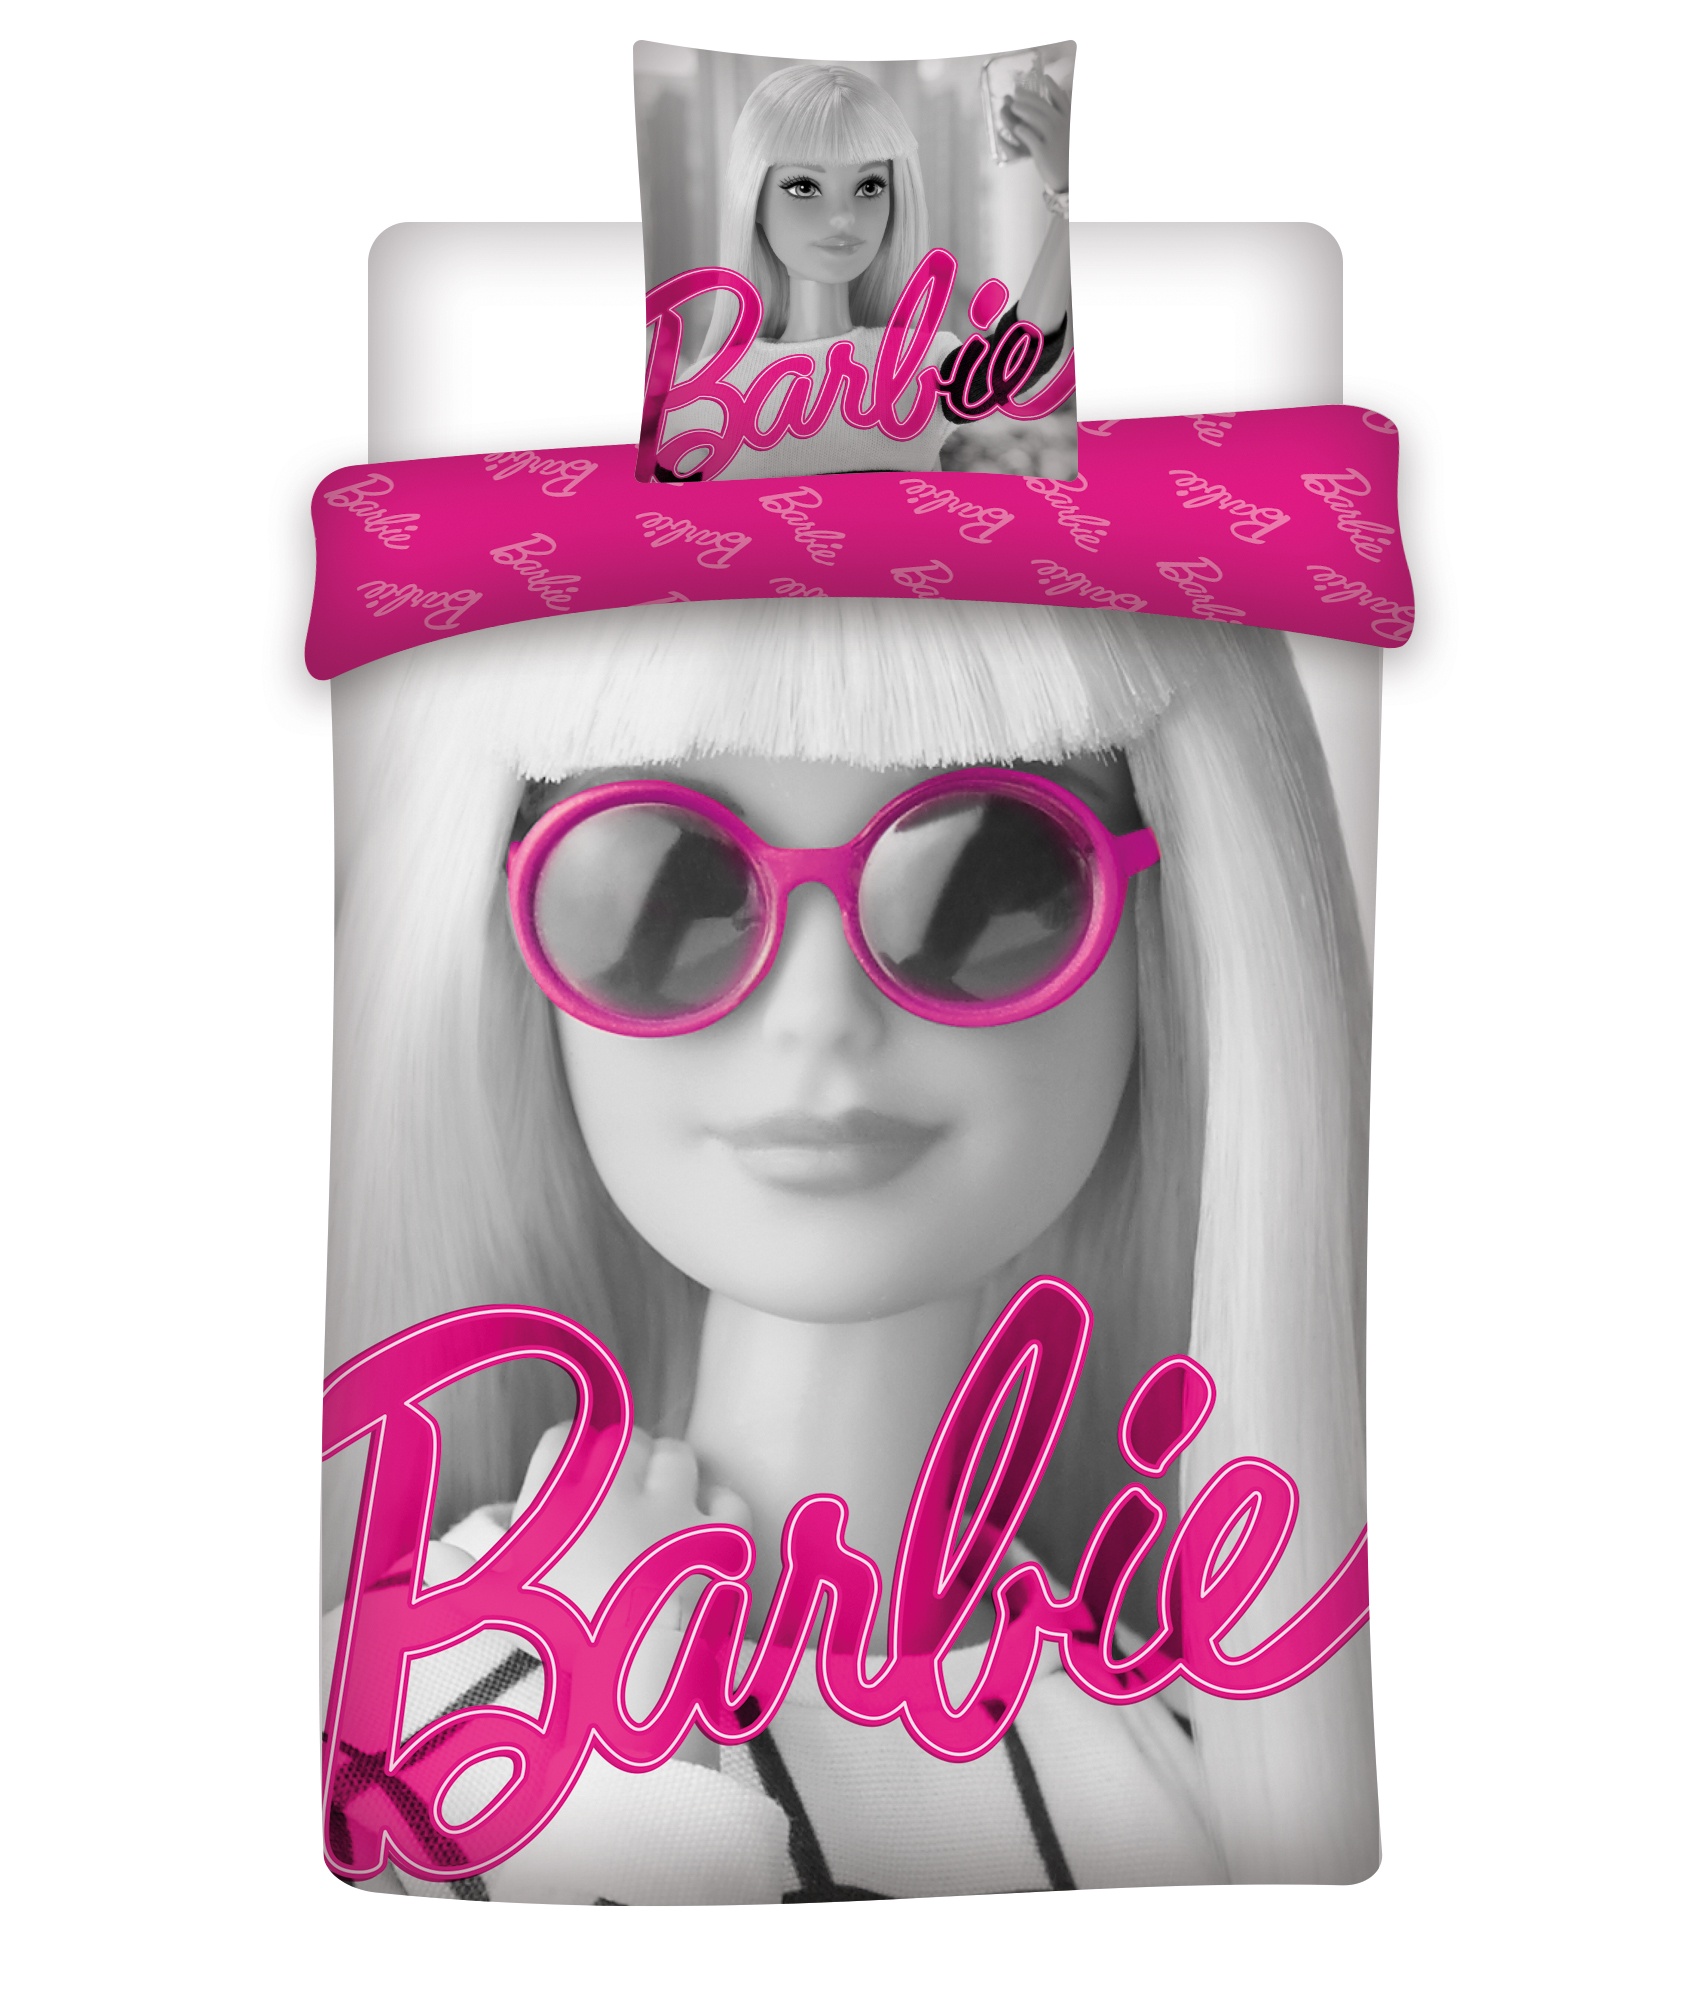 Aymax Duvet Cover Barbie 140 X 220 Cm Twm Tom Wholesale Management